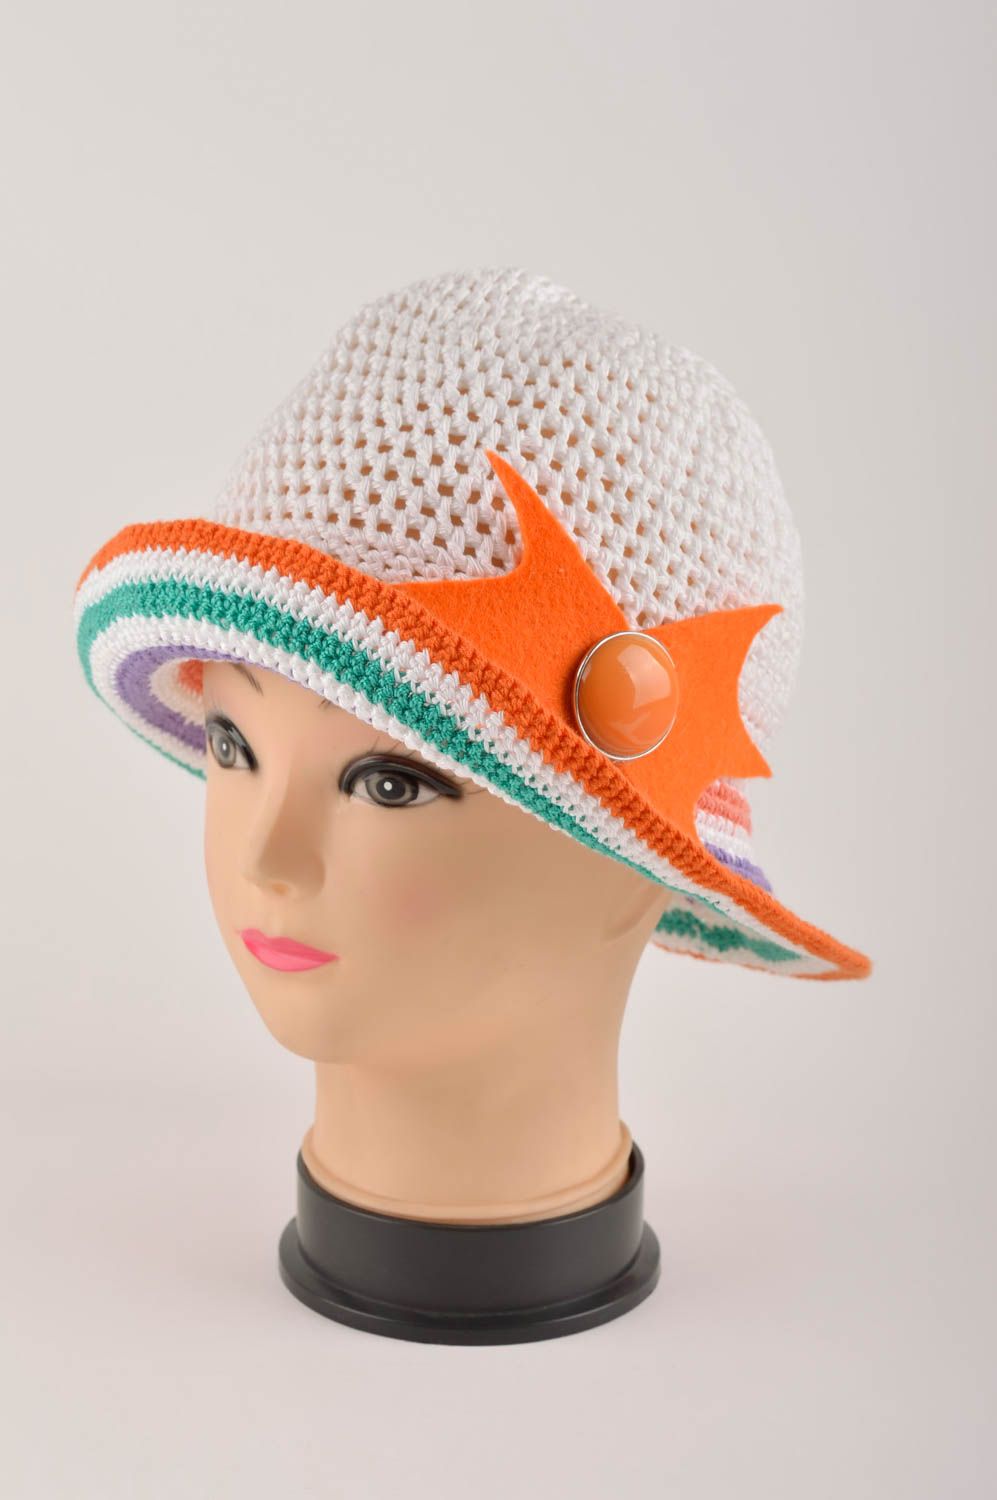 Handmade hat summer hat gift ideas designer cap summer headwear designer hat photo 1